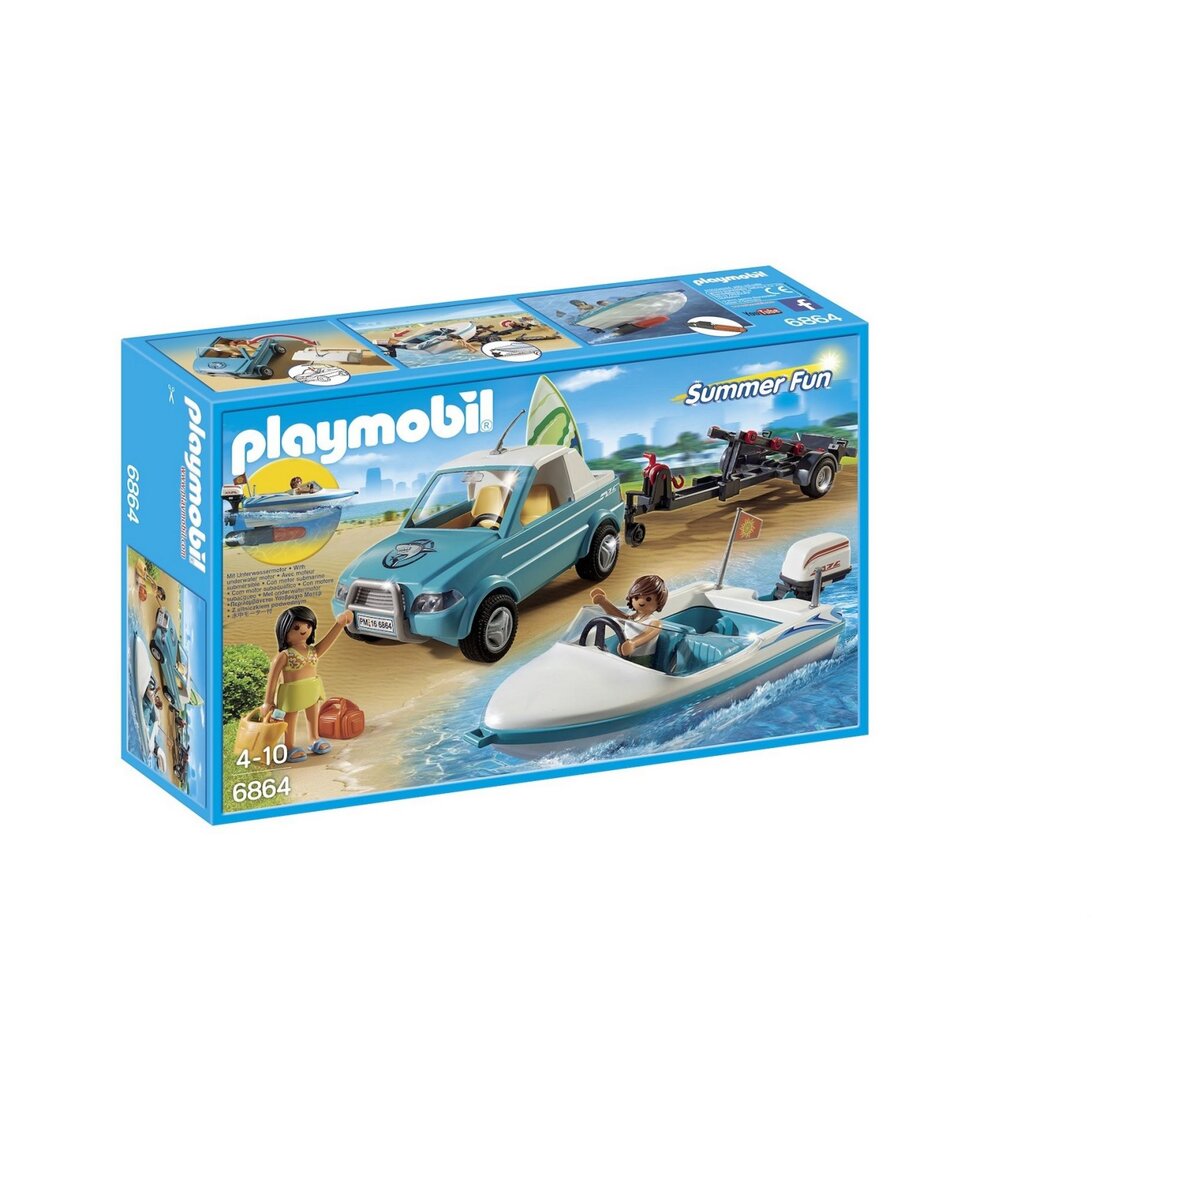 PLAYMOBIL 6864 - Summer Fun - Voiture avec bateau et moteur